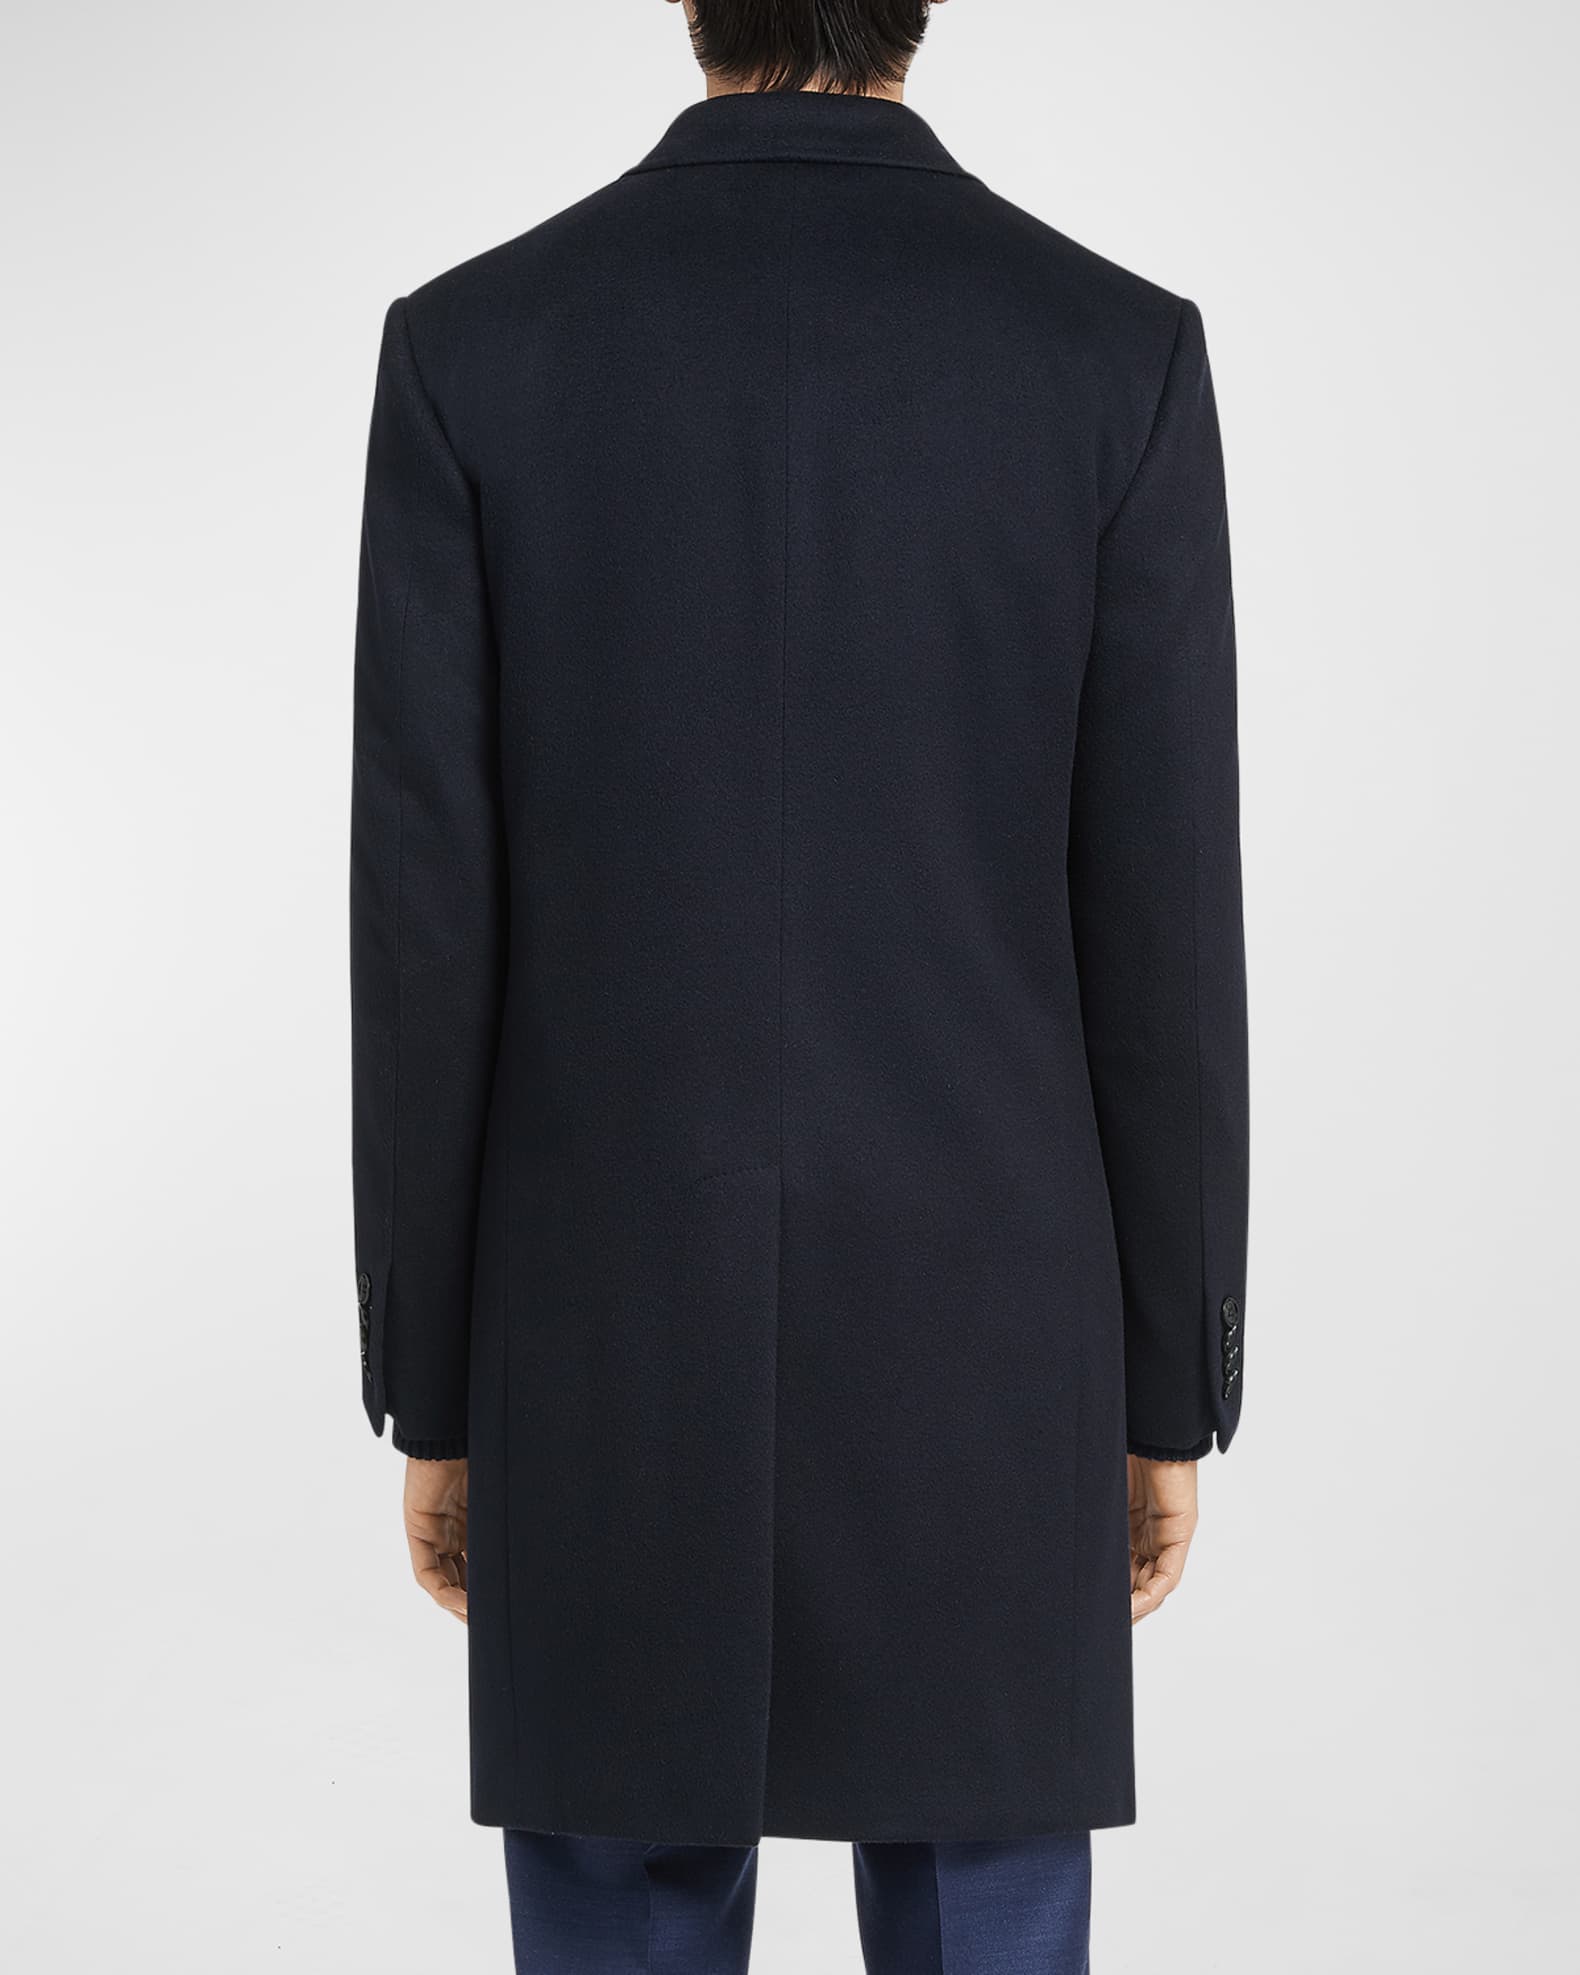 ZEGNA Men's Solid Cashmere Topcoat | Neiman Marcus